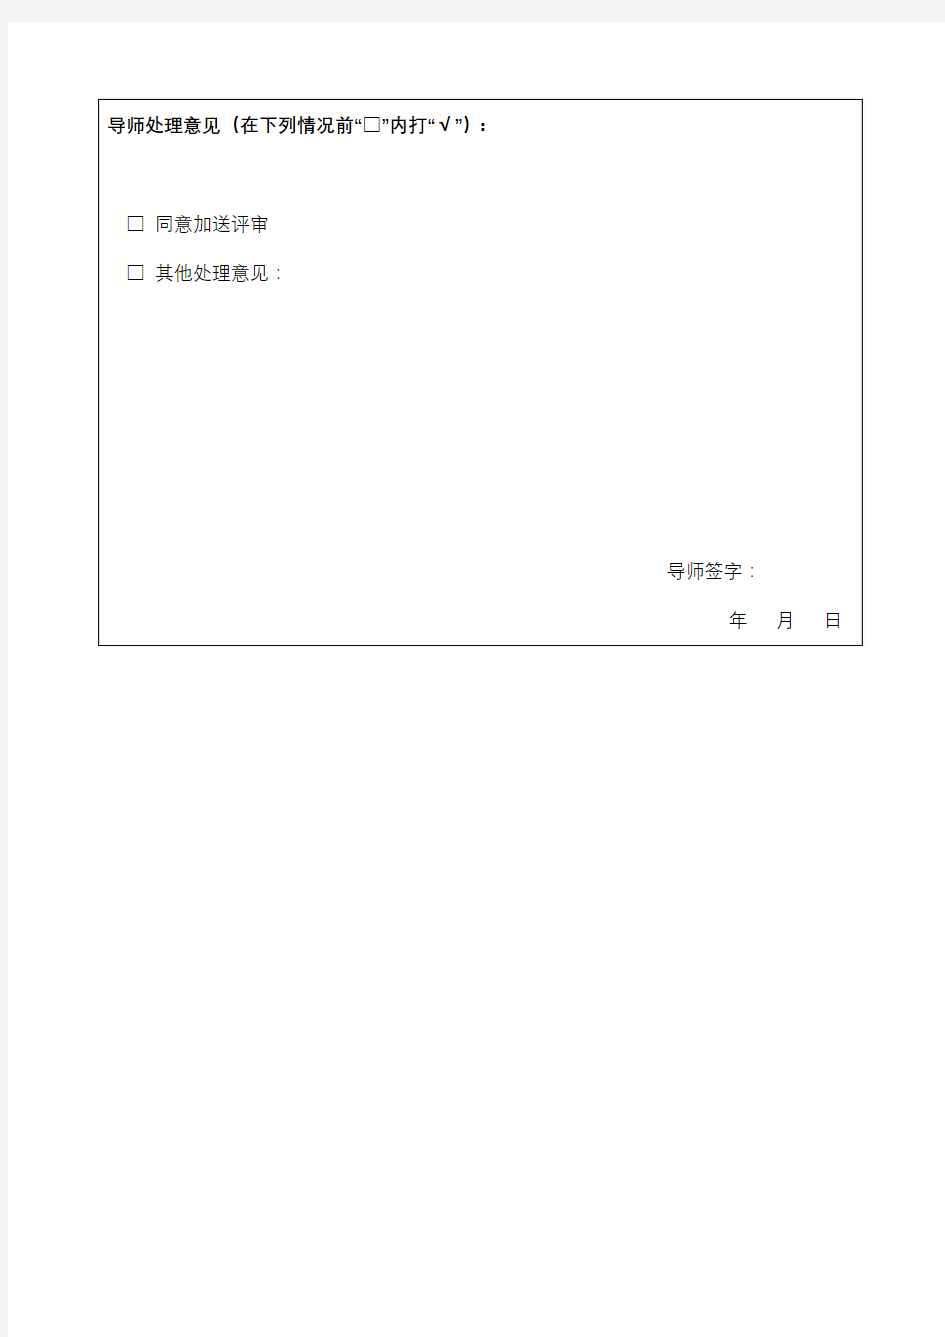 上海海洋大学研究生学位论文送审加送评审申请表【模板】